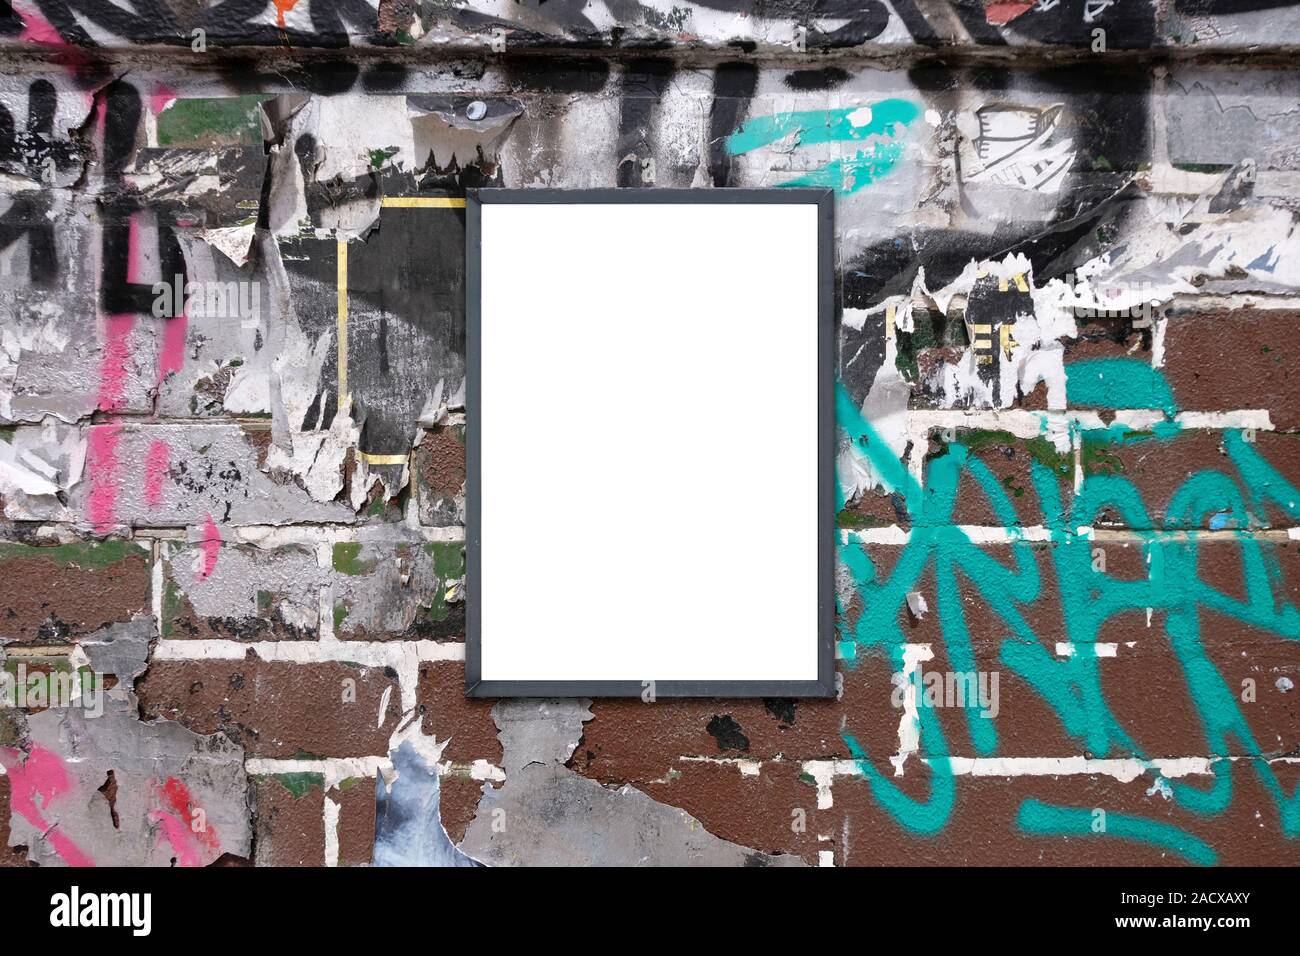 Aviso en blanco publicidad junta de boceto en terrenos urbanos muro cubierto de graffiti pintado carteles Foto de stock